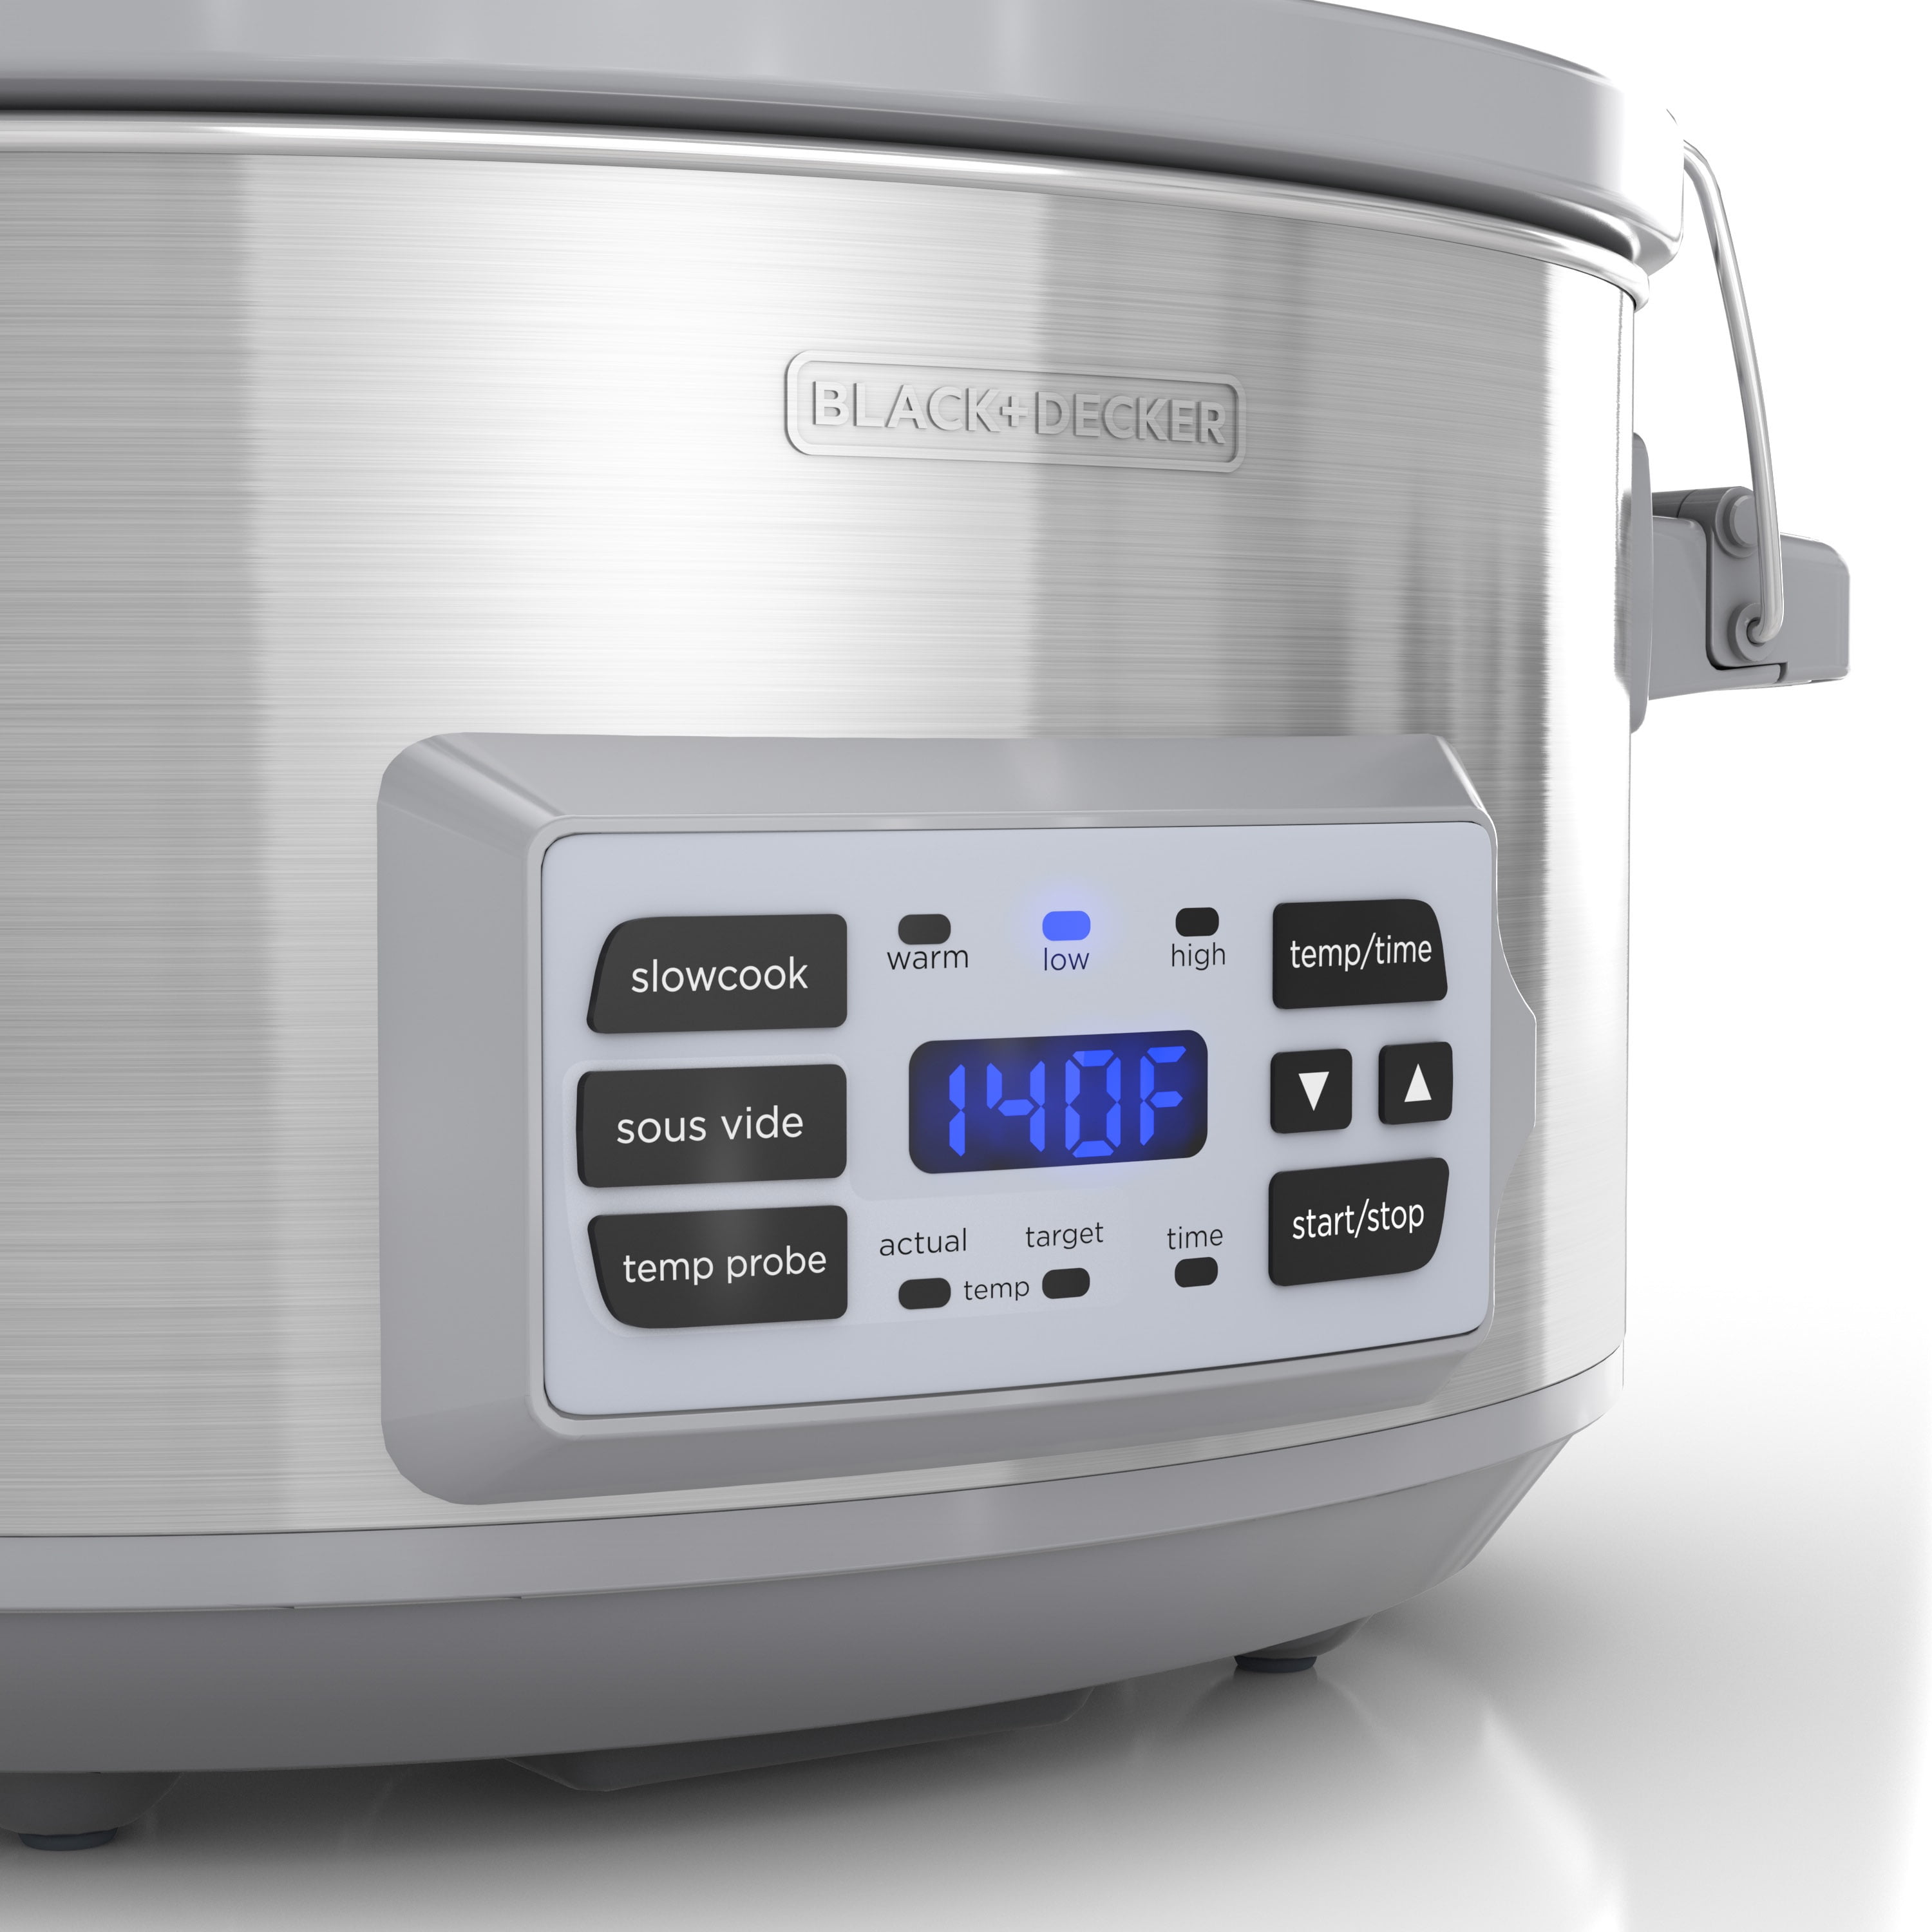 BLACK+DECKER 7-Quart Digital Slow Cooker with Chalkboard Surface, Slat -  Jolinne